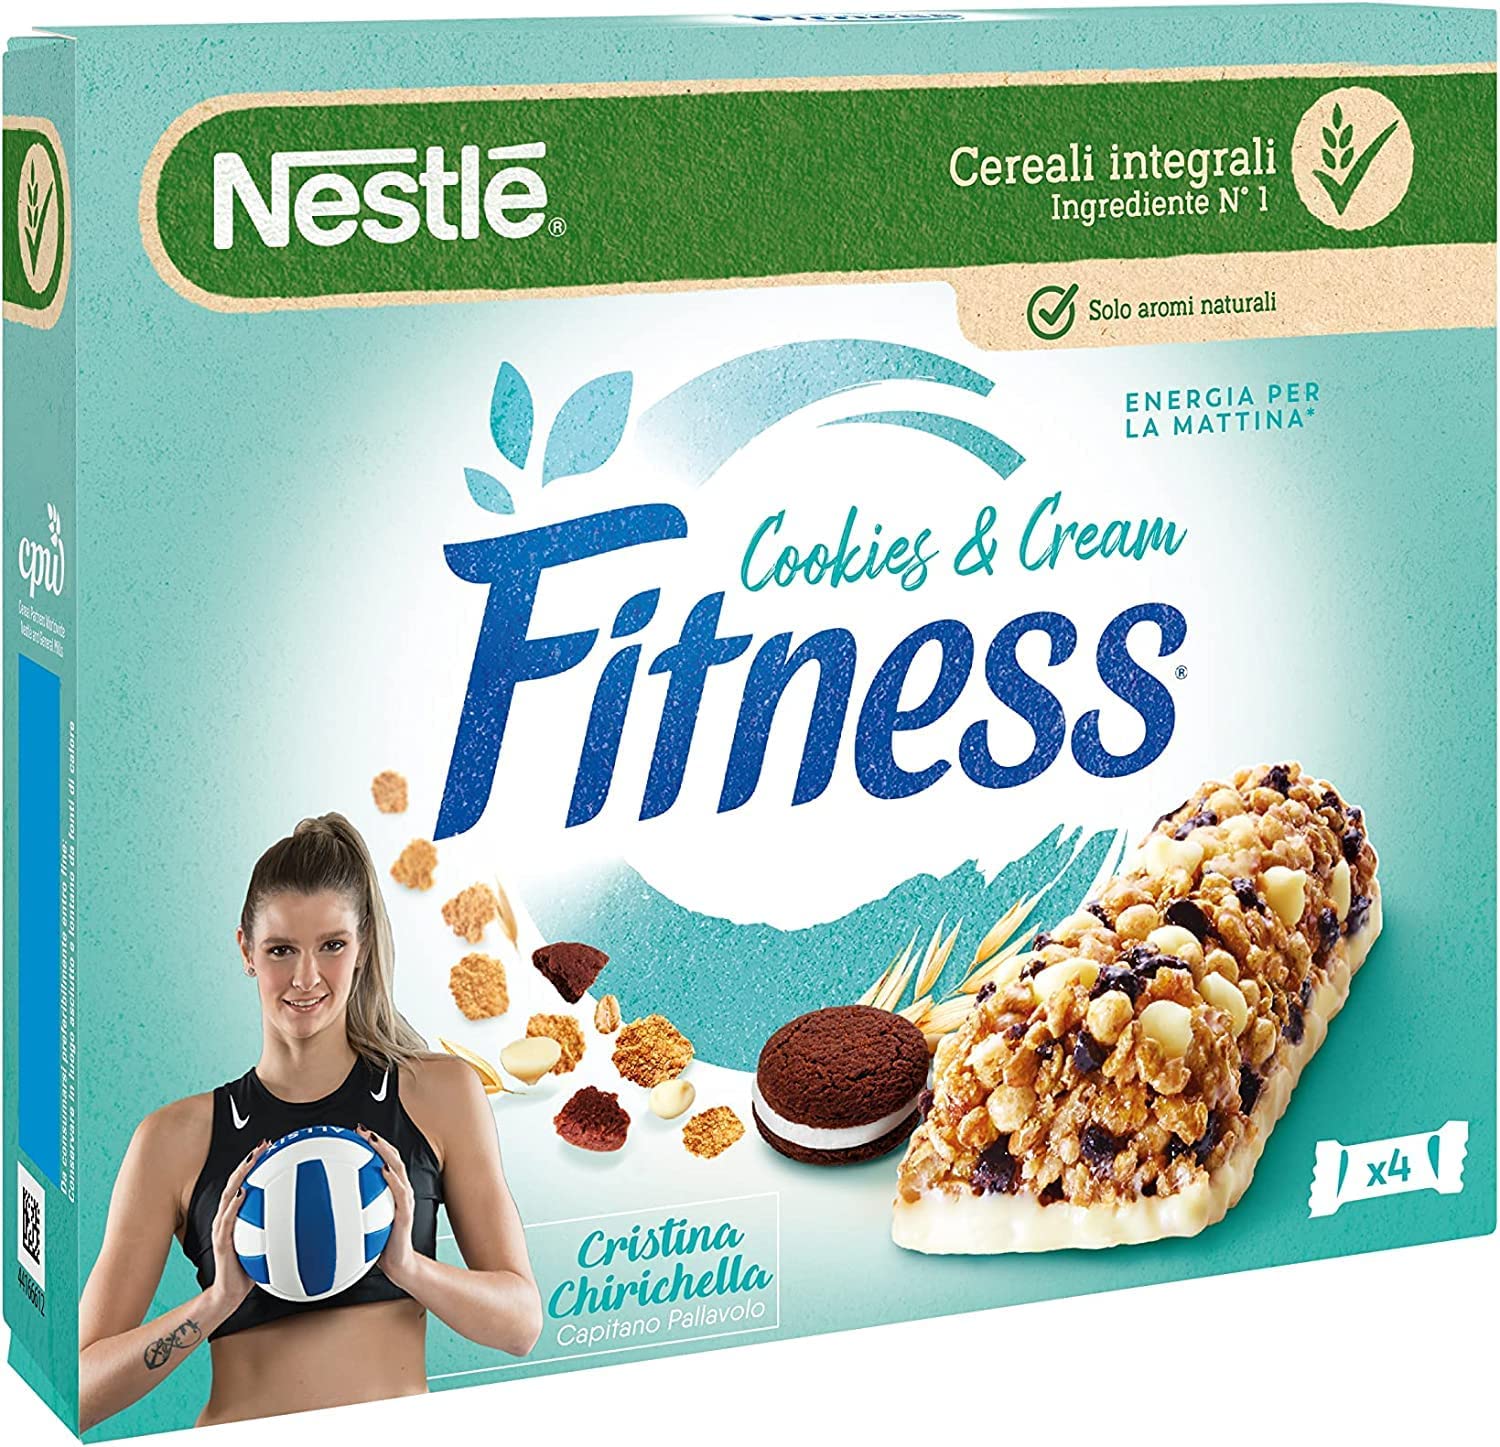 Nestle - Fitness Barrette Cookies and Cream al Cioccolato e Crema - Barretta con Frumento e Avena Integrale 94 g